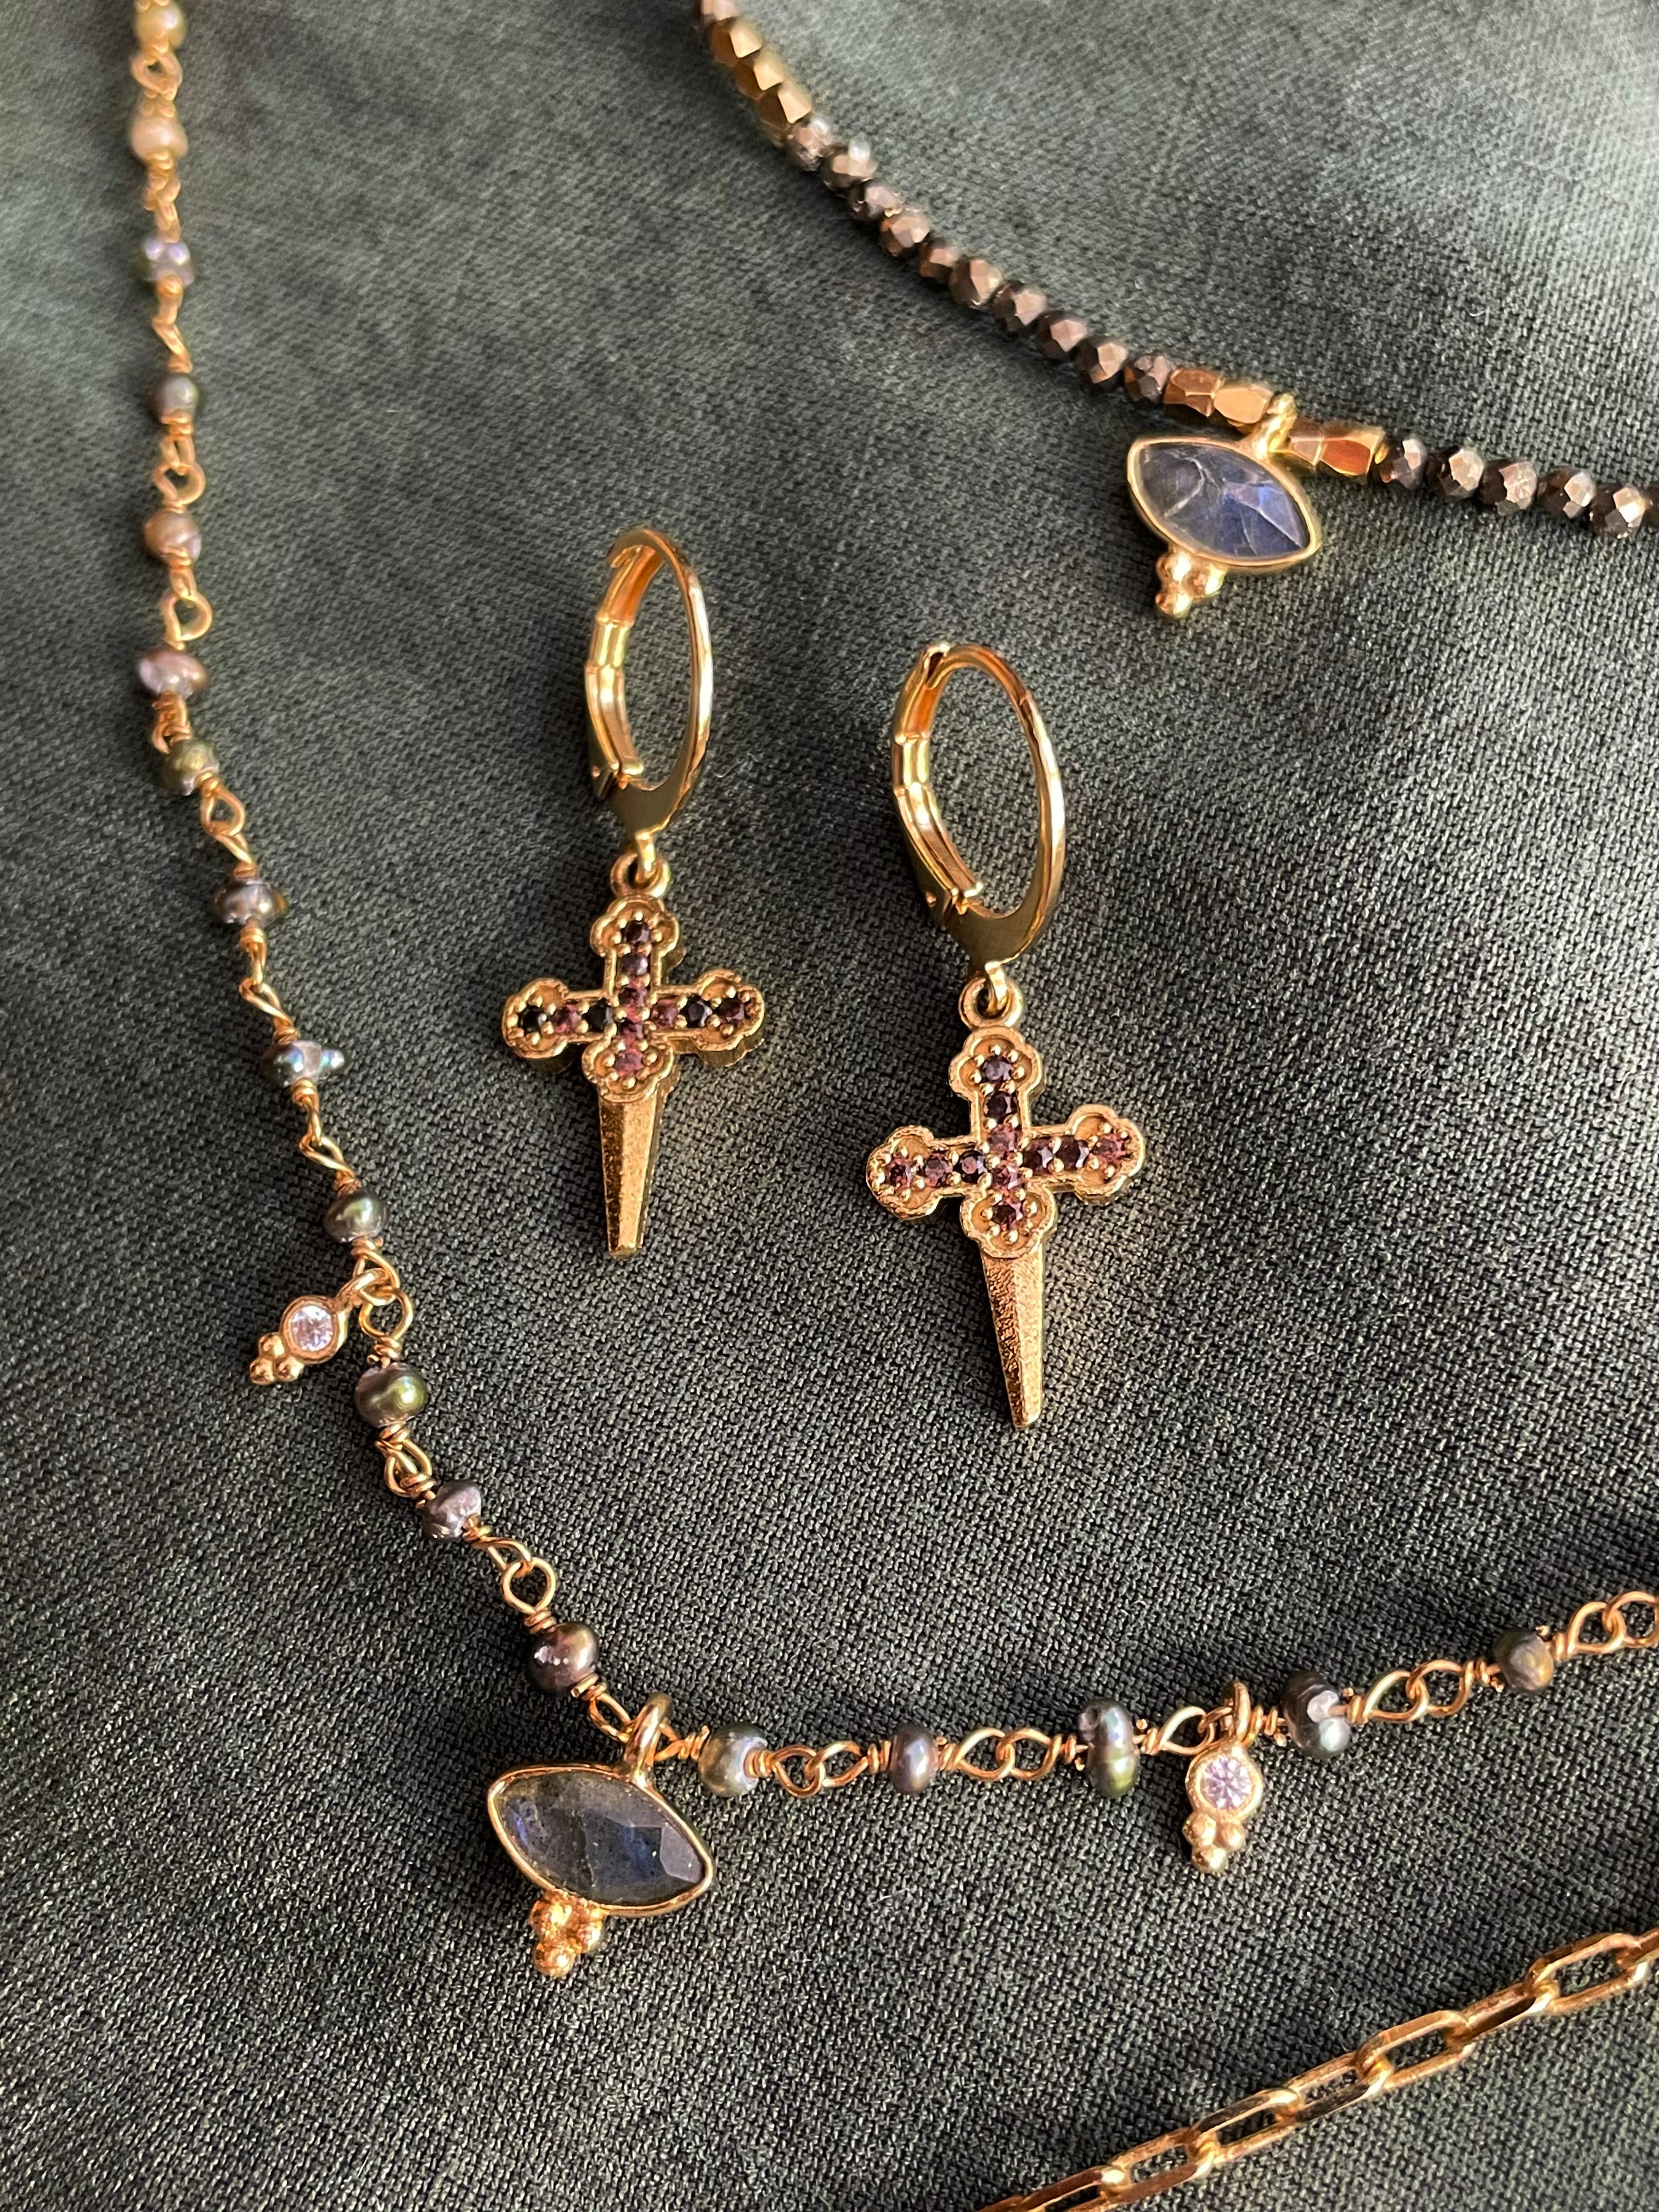 gold plated huggie earrings with cubic zirconia stone virginie berman